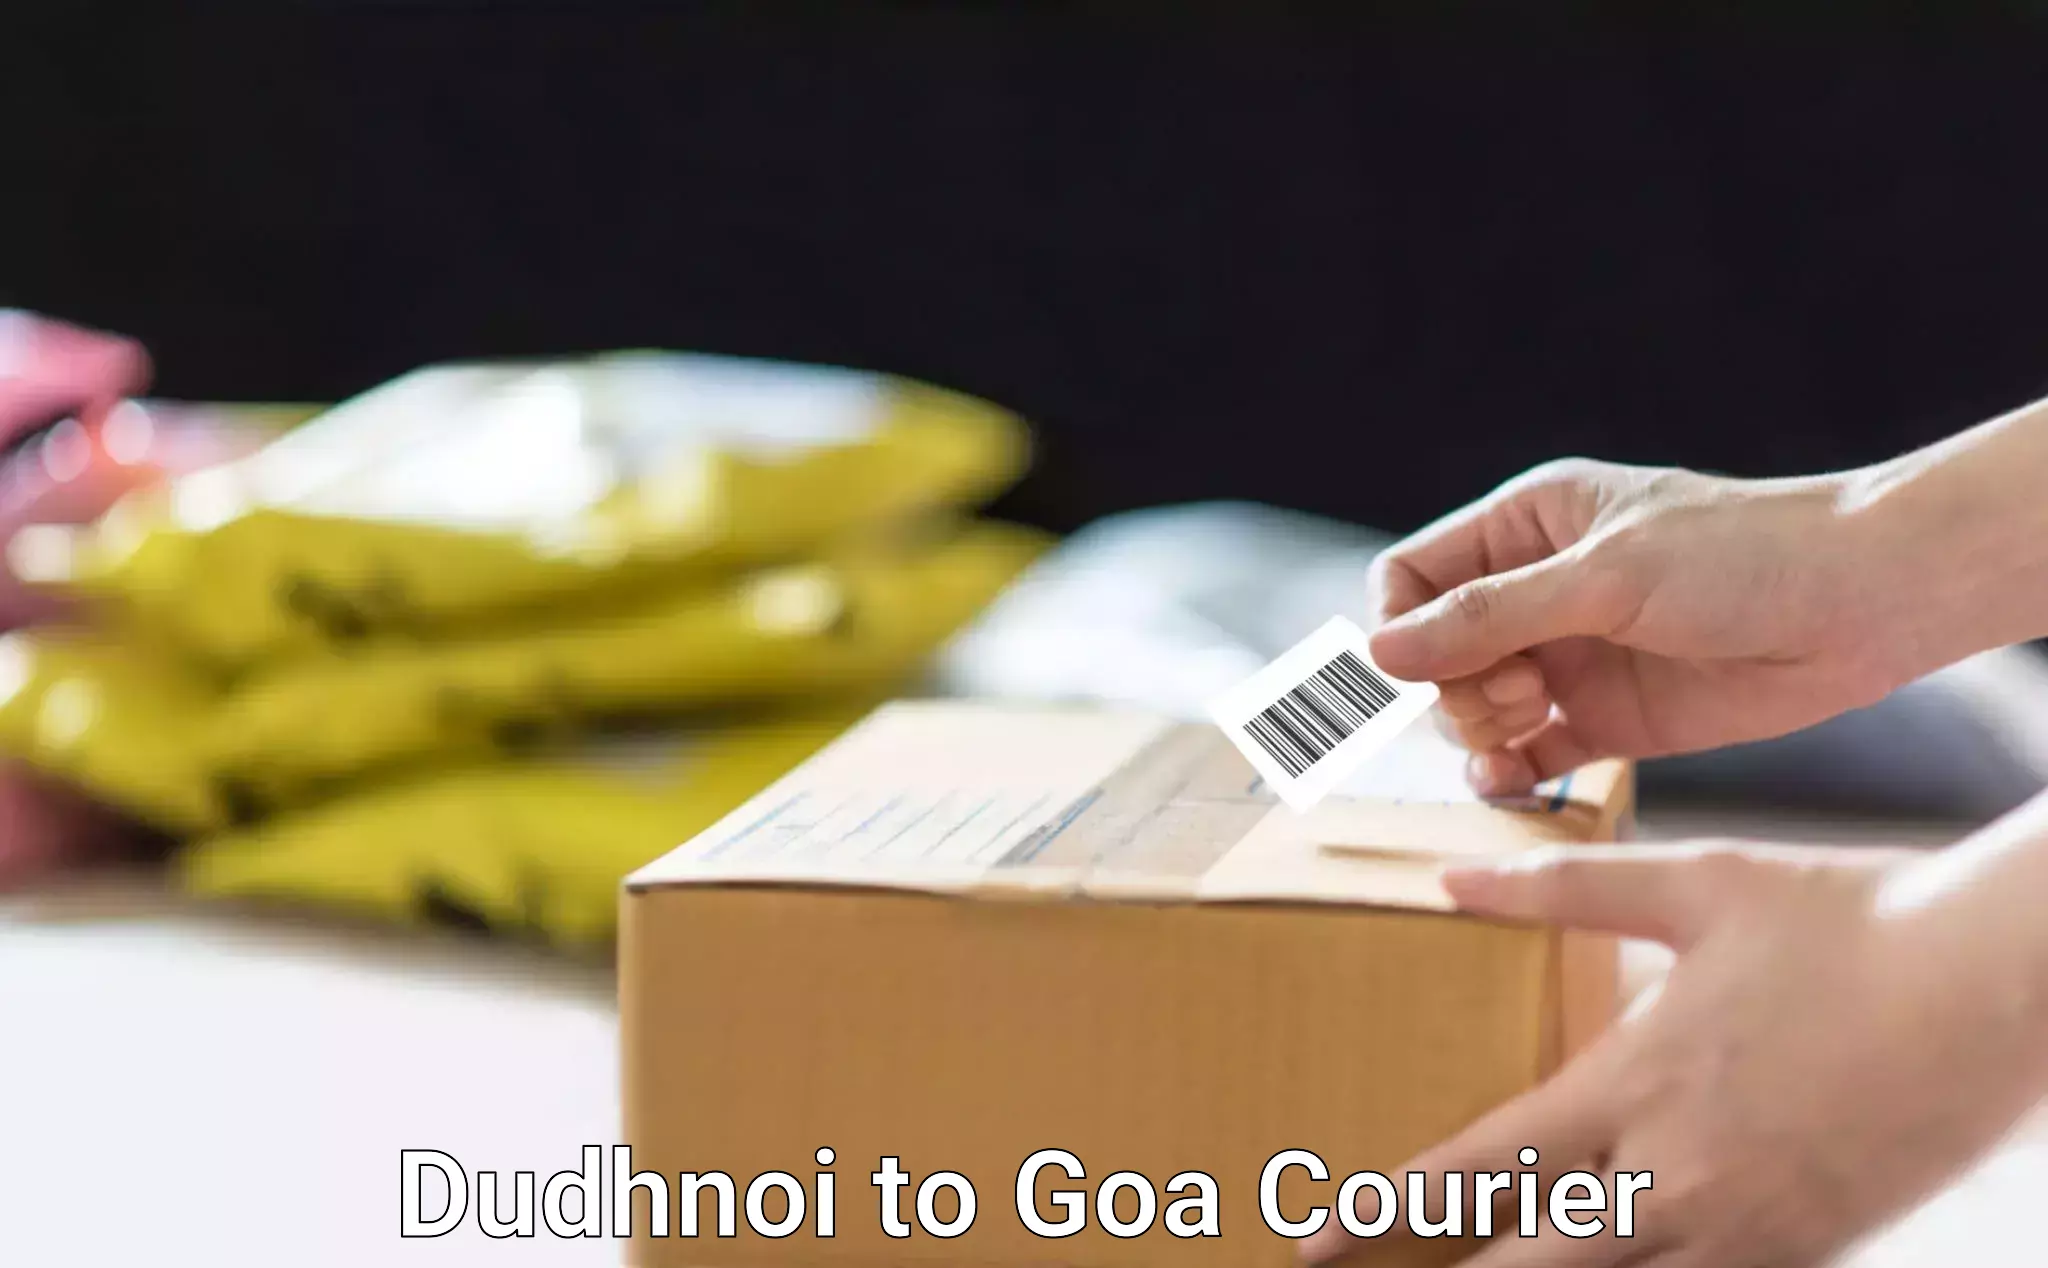 Budget-friendly shipping Dudhnoi to Goa